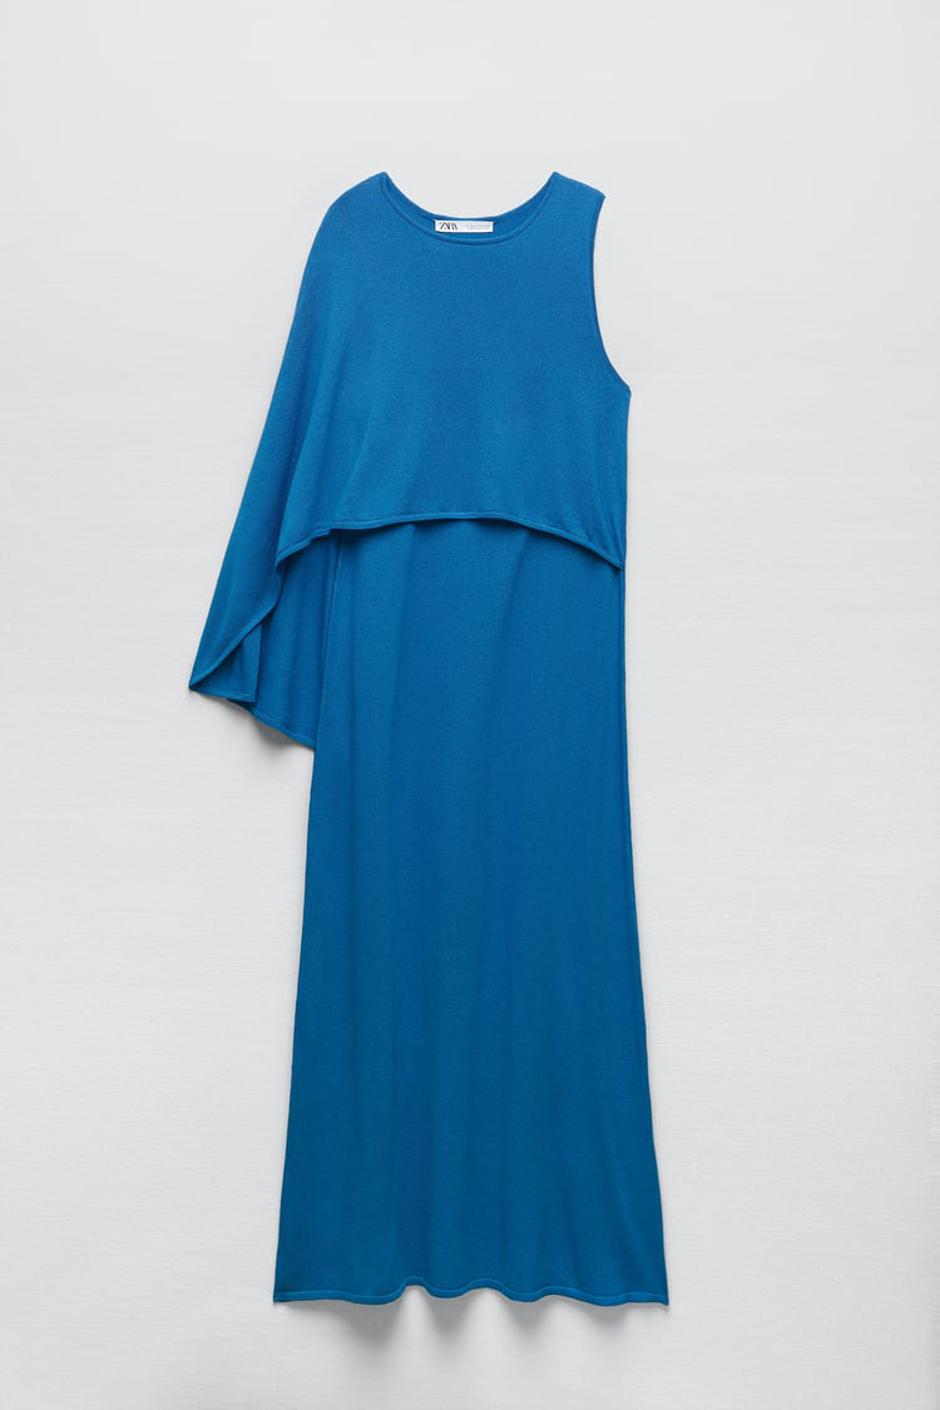 Zara pelerina haljina | Autor: Zara